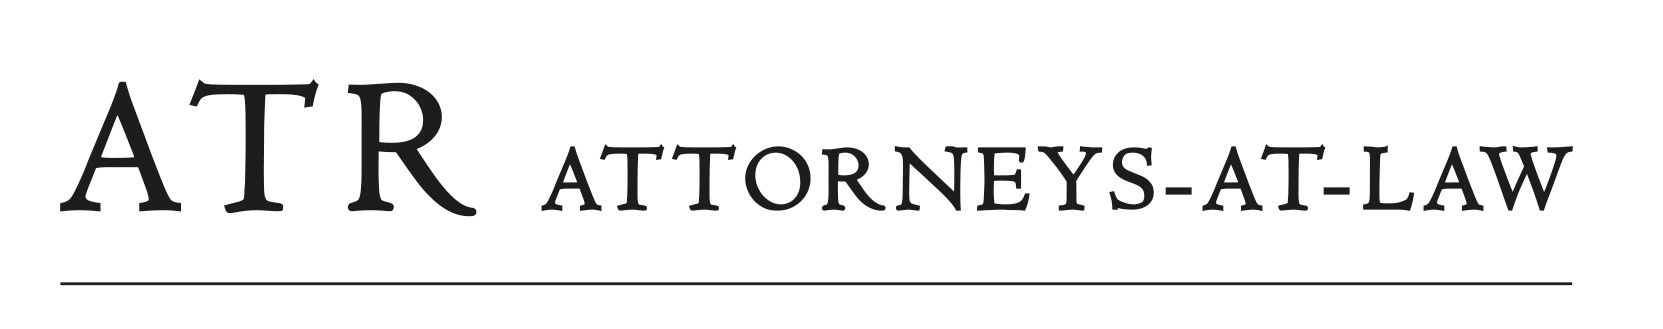 ATR Attorneys-at-Law logo